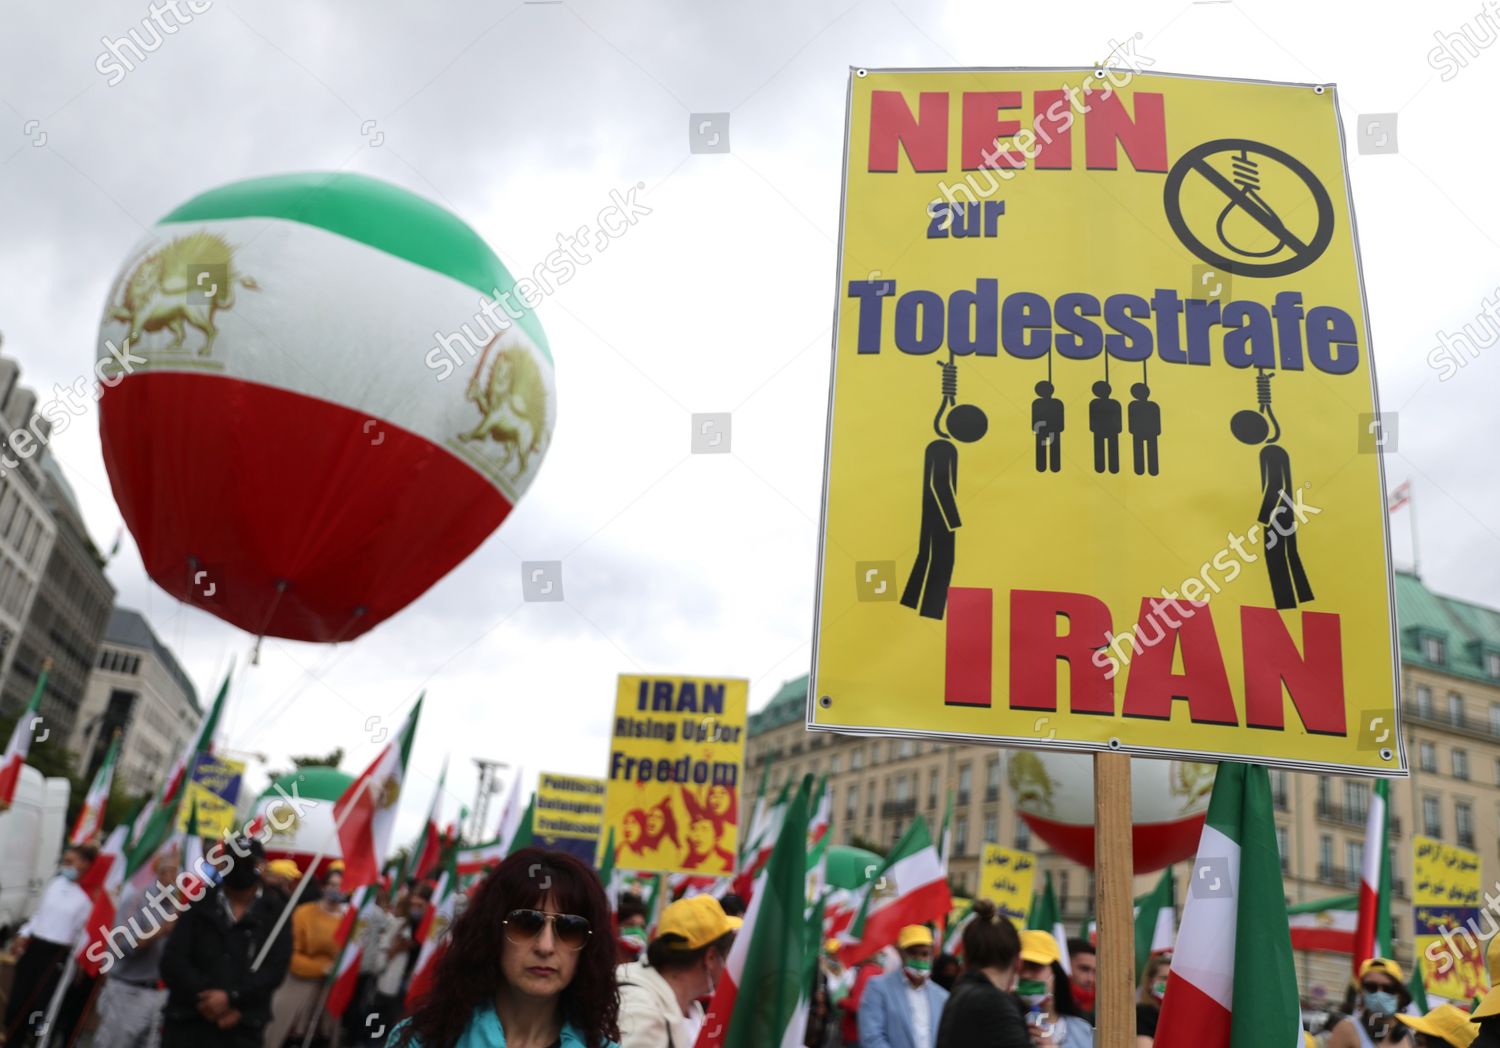 Demonstion against Iranian regime in Berlin, Germany - 17 Jul 2020